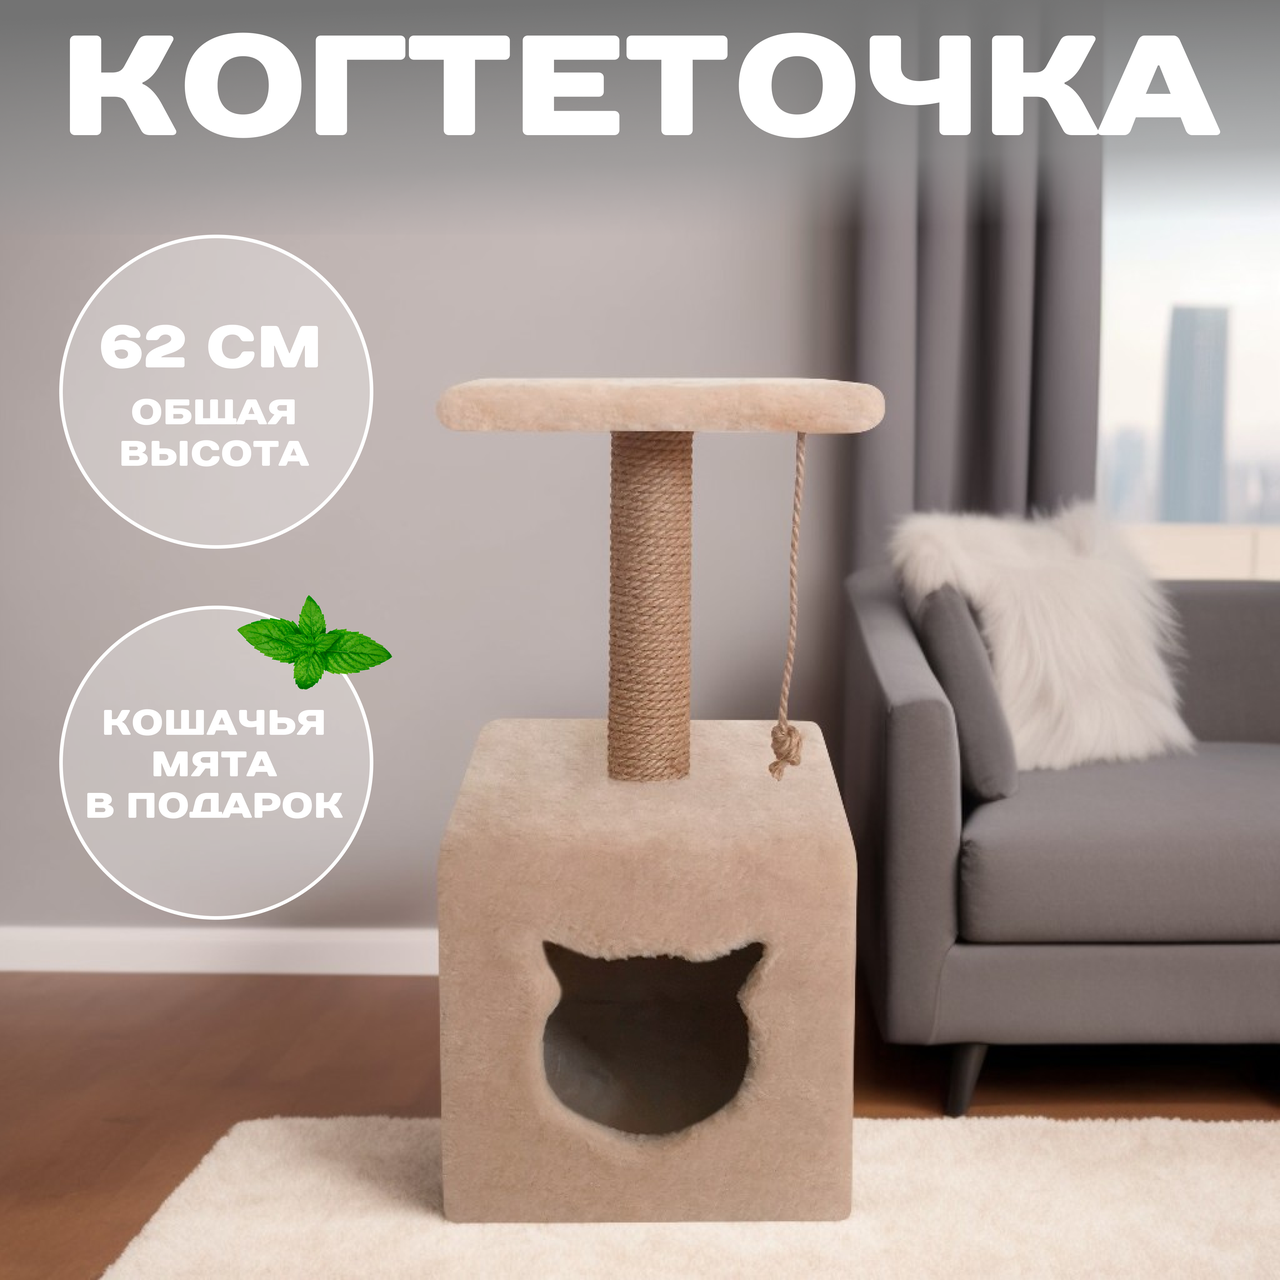 Когтеточка для кошки с домиком "Мальта" 62 см. со столбиком и лежанкой, бежевый, джут